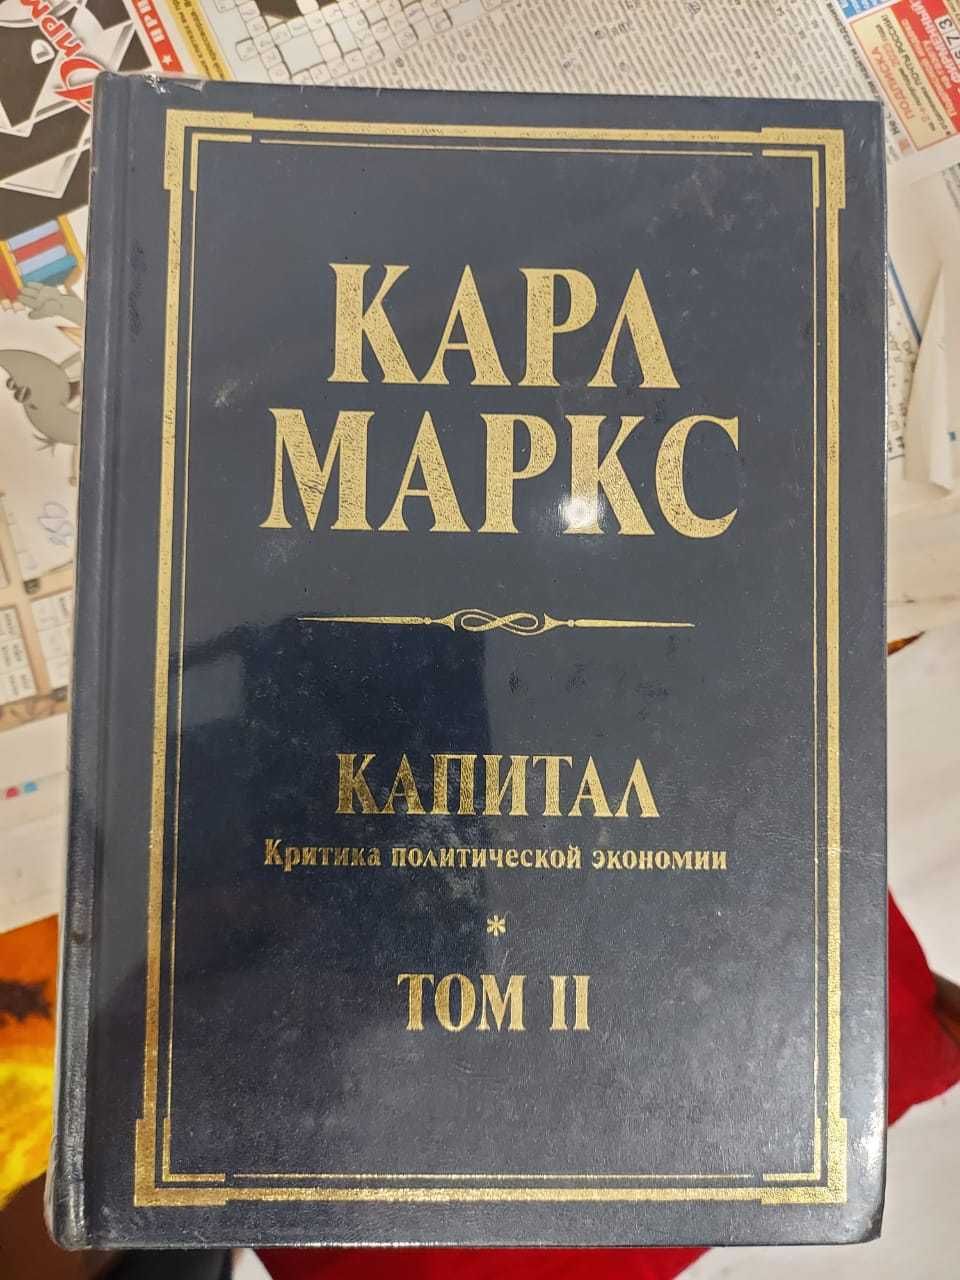 Карл Маркс "Капитал" 2 том